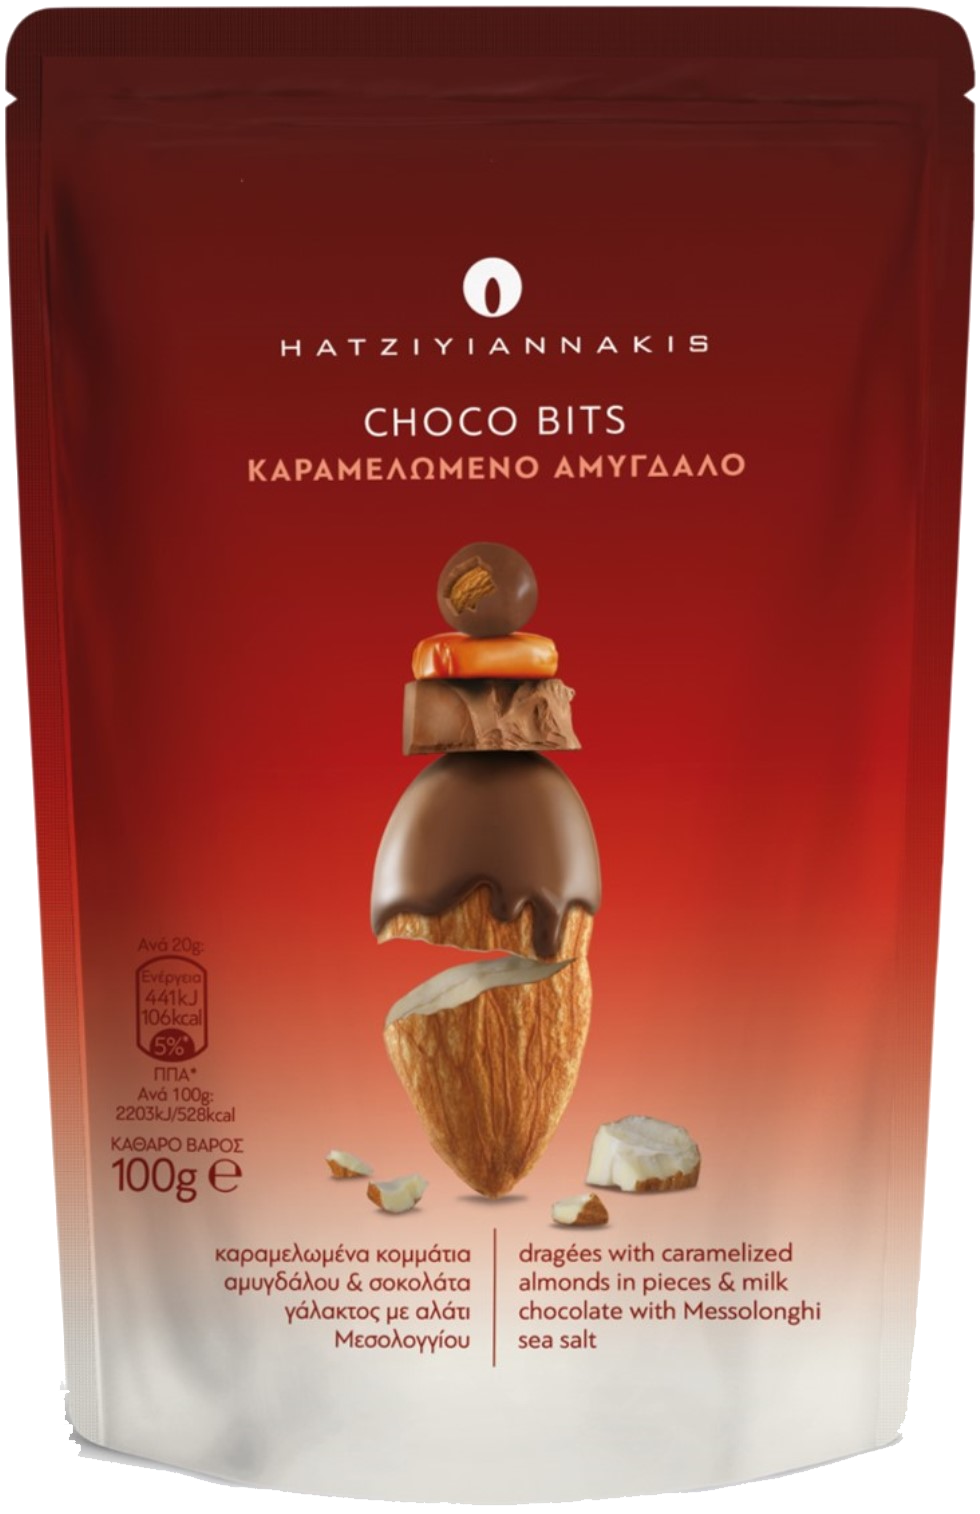 Choco Bits Karamelomeno Amygdalo